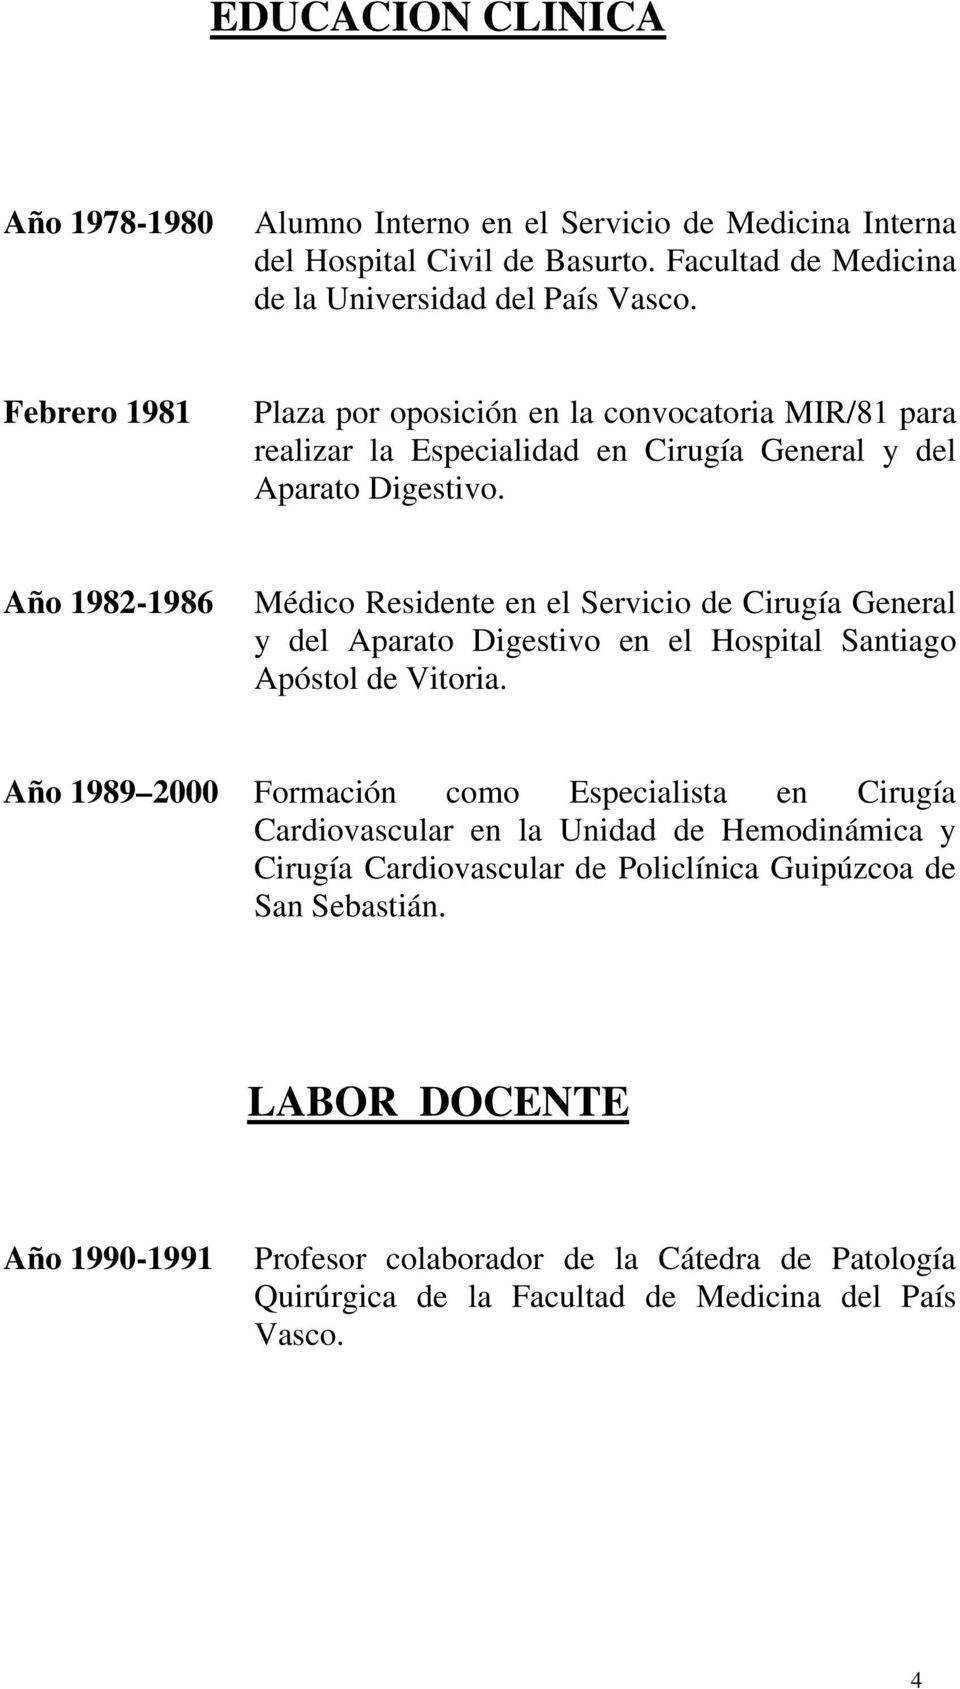 Año 1982-1986 Médico Residente en el Servicio de Cirugía General y del Aparato Digestivo en el Hospital Santiago Apóstol de Vitoria.